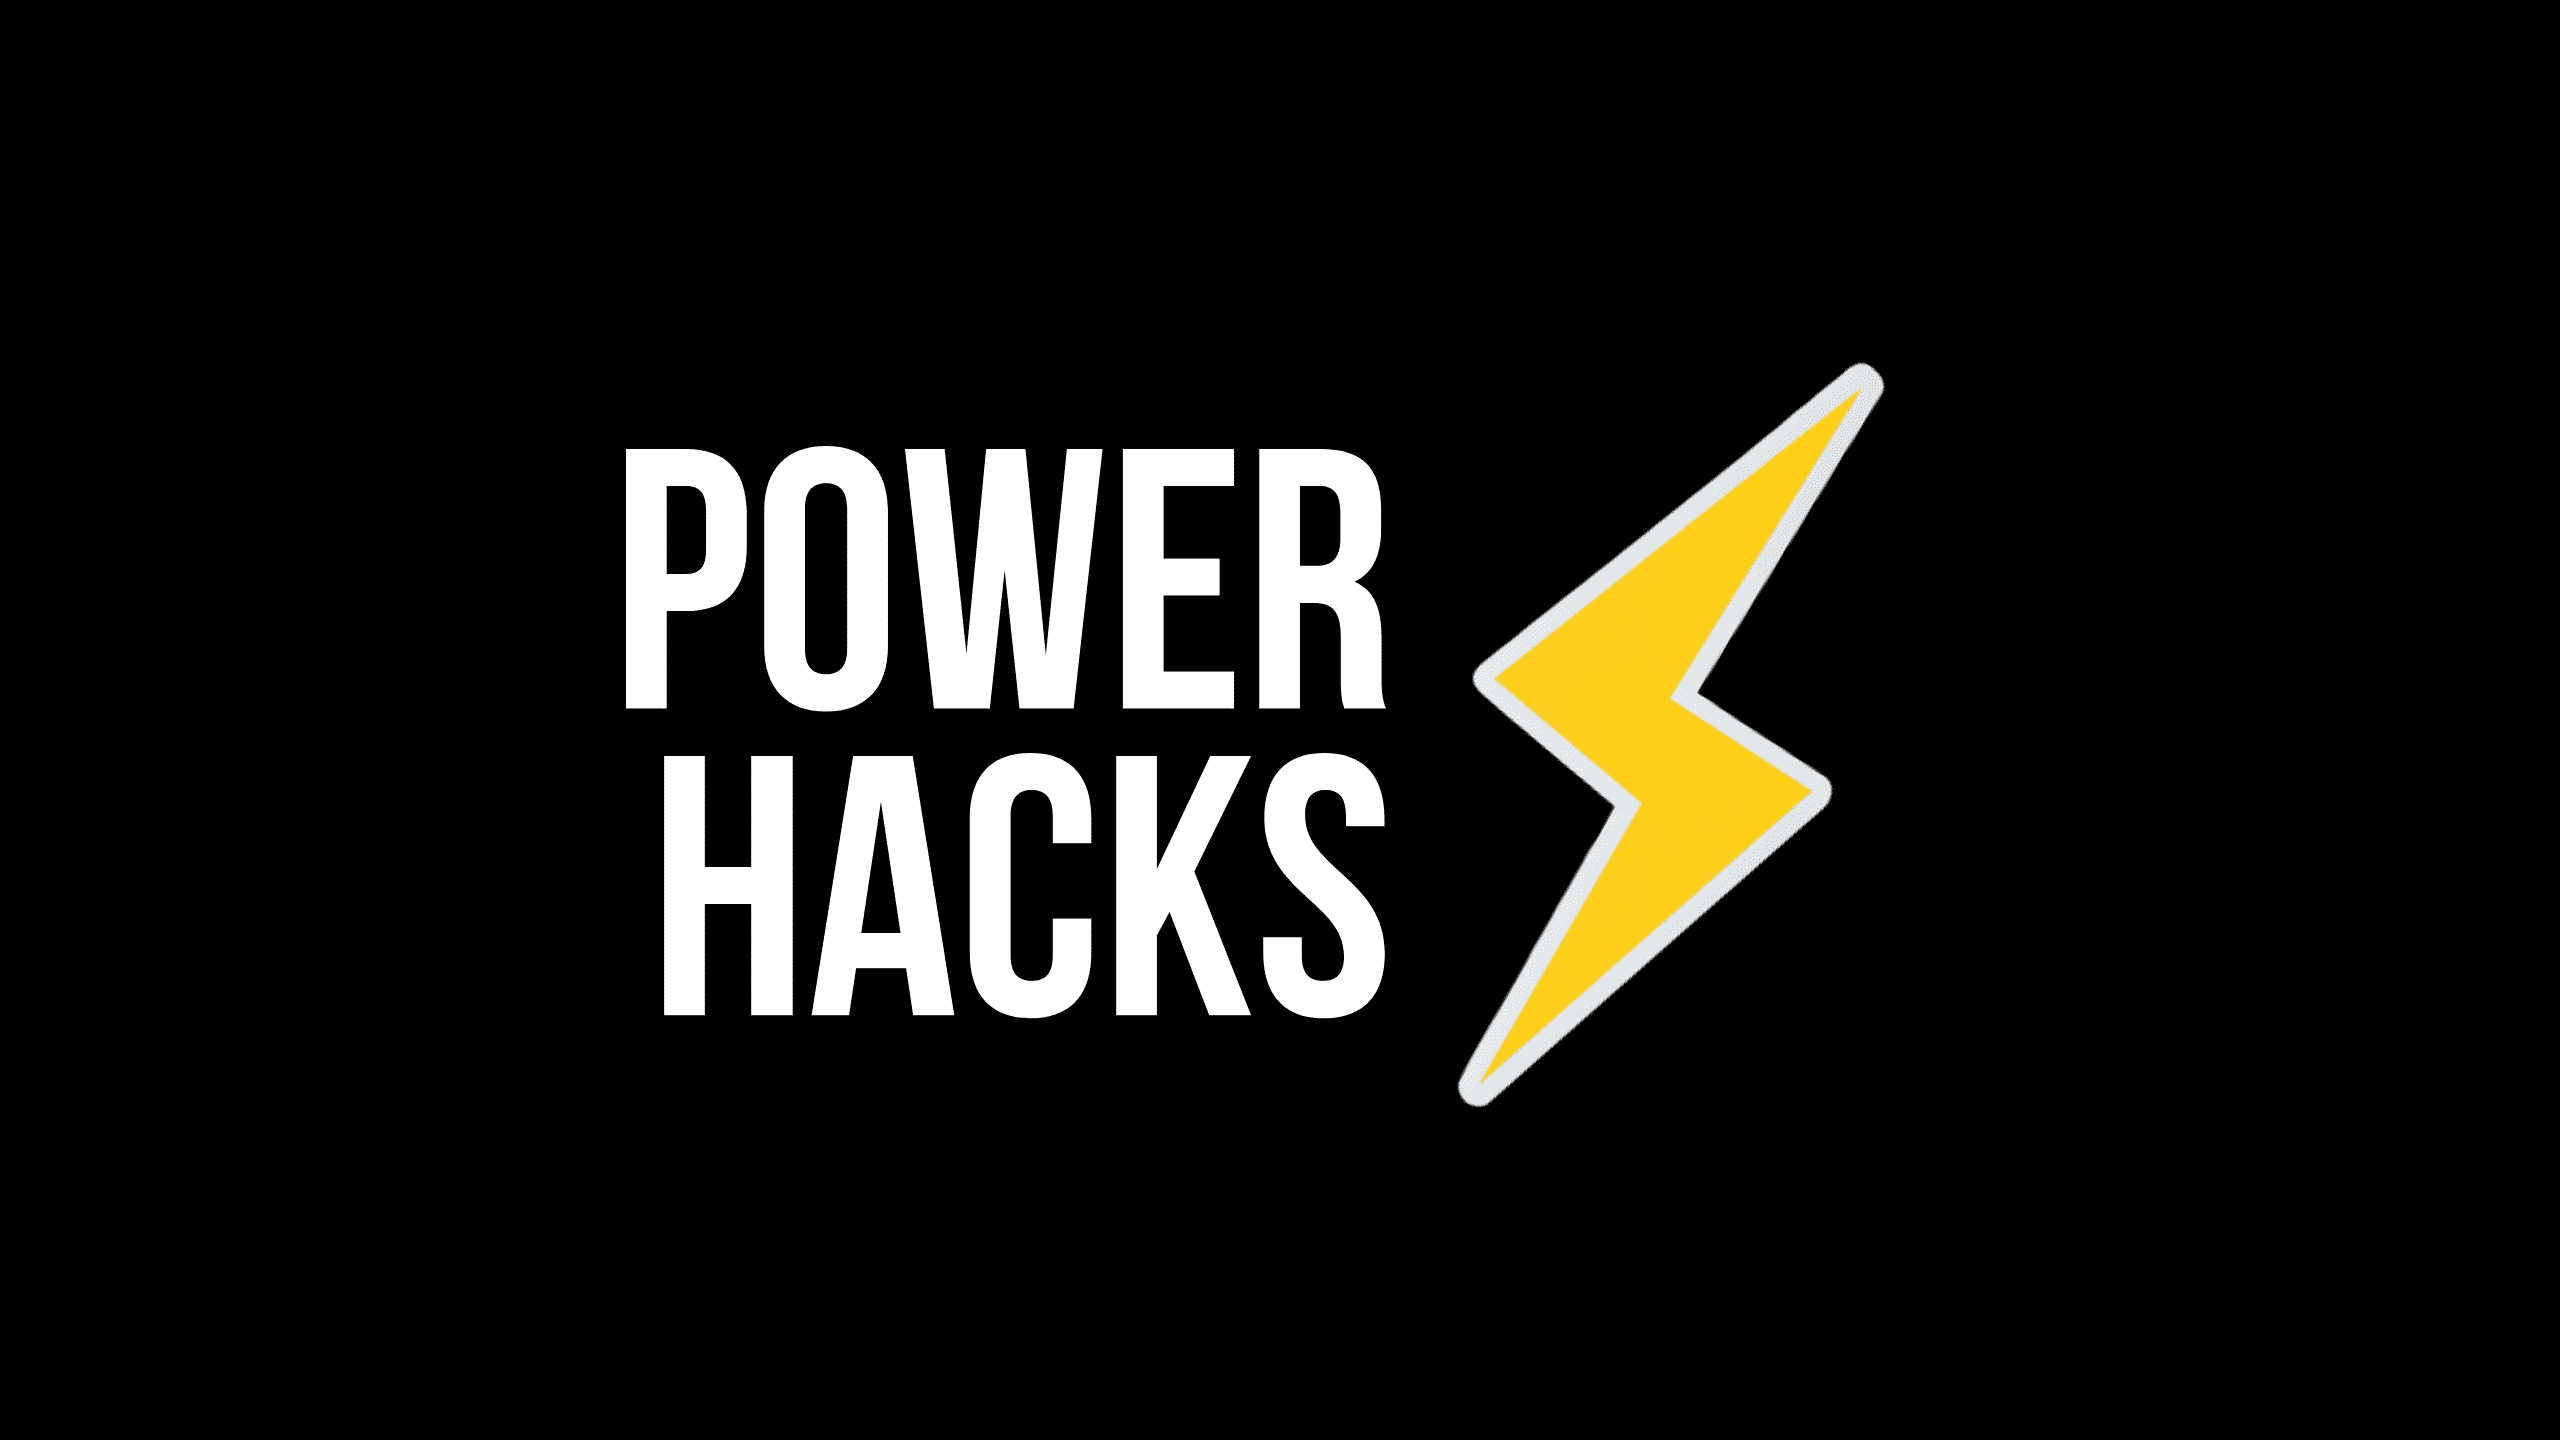 Power Hacks nº 1, com João Kepler: Mindset empreendedor, investimento anjo e estruturação de negócios